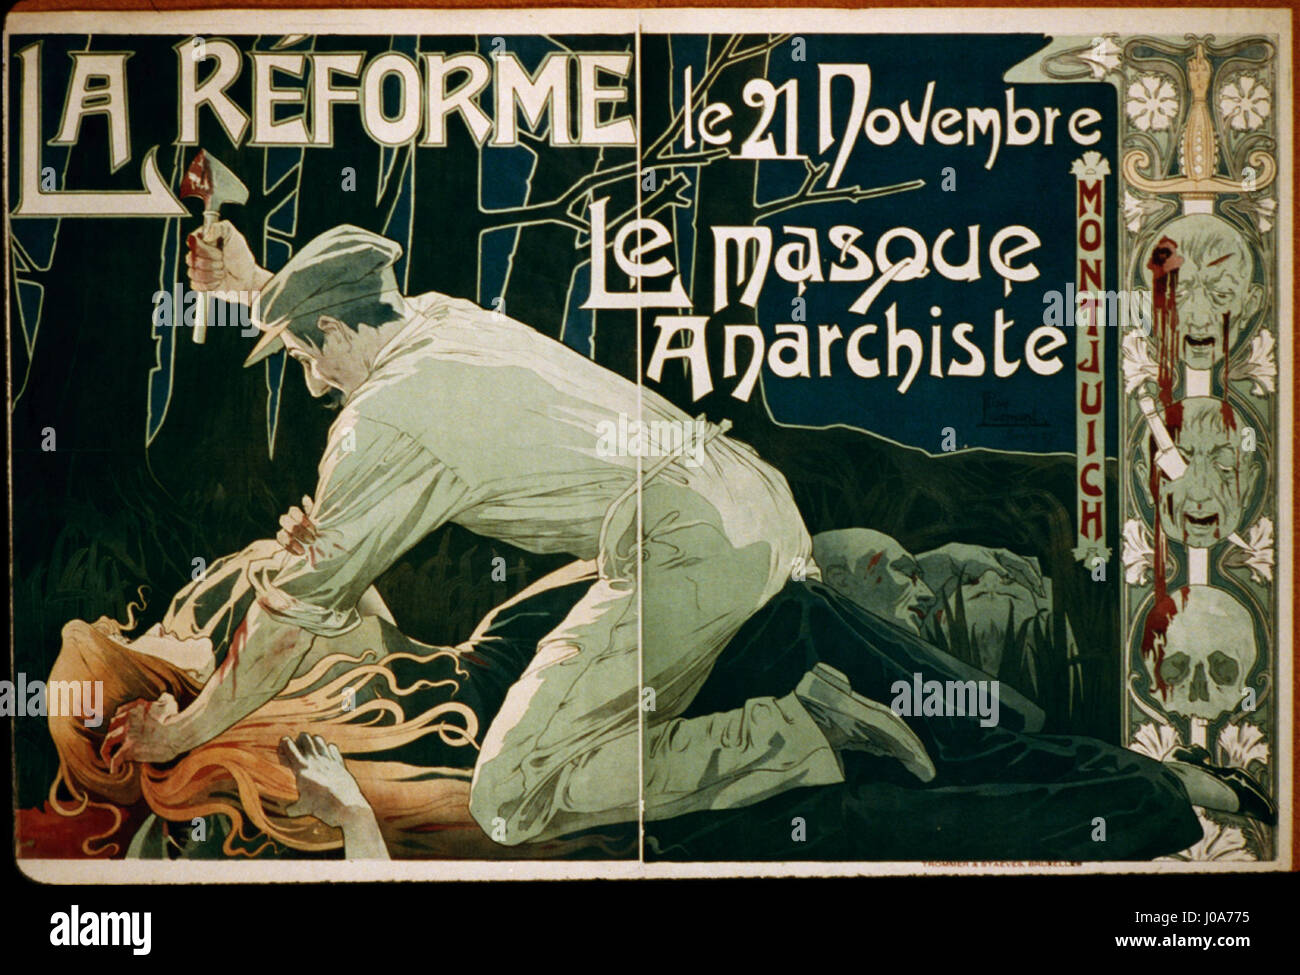 Privat-Livemont - La Réforme, le 21 Novembre, le masque anarchiste Stock Photo